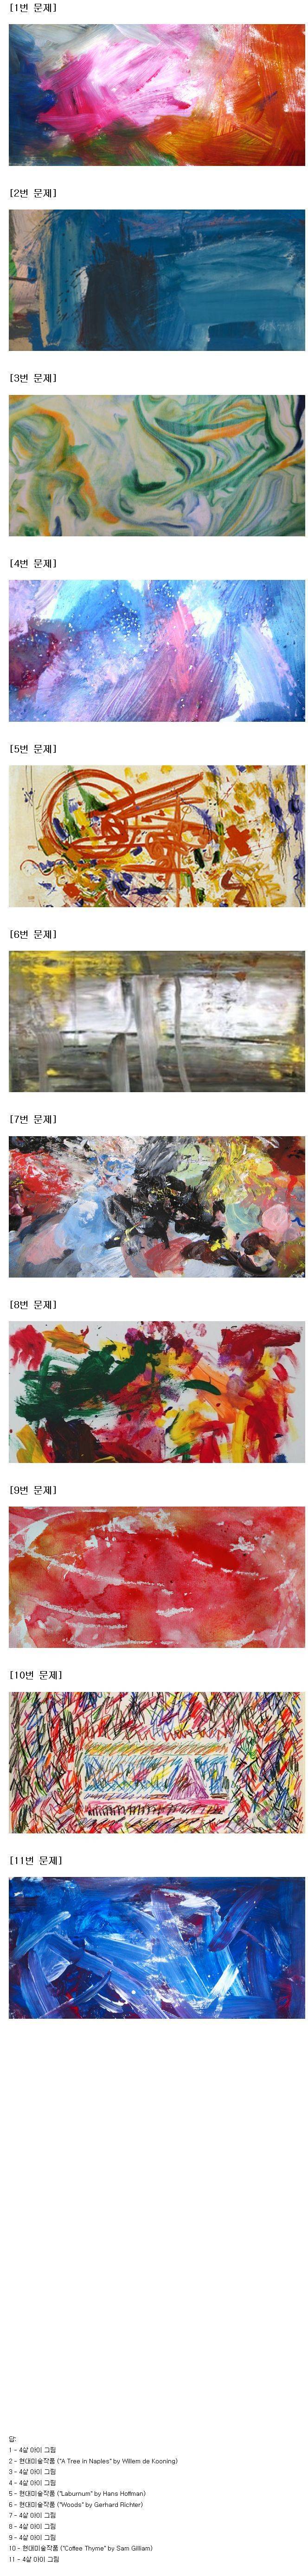 nokbeon.net-현대미술 vs 4살 아이작품 구분하기.jpg-1번 이미지